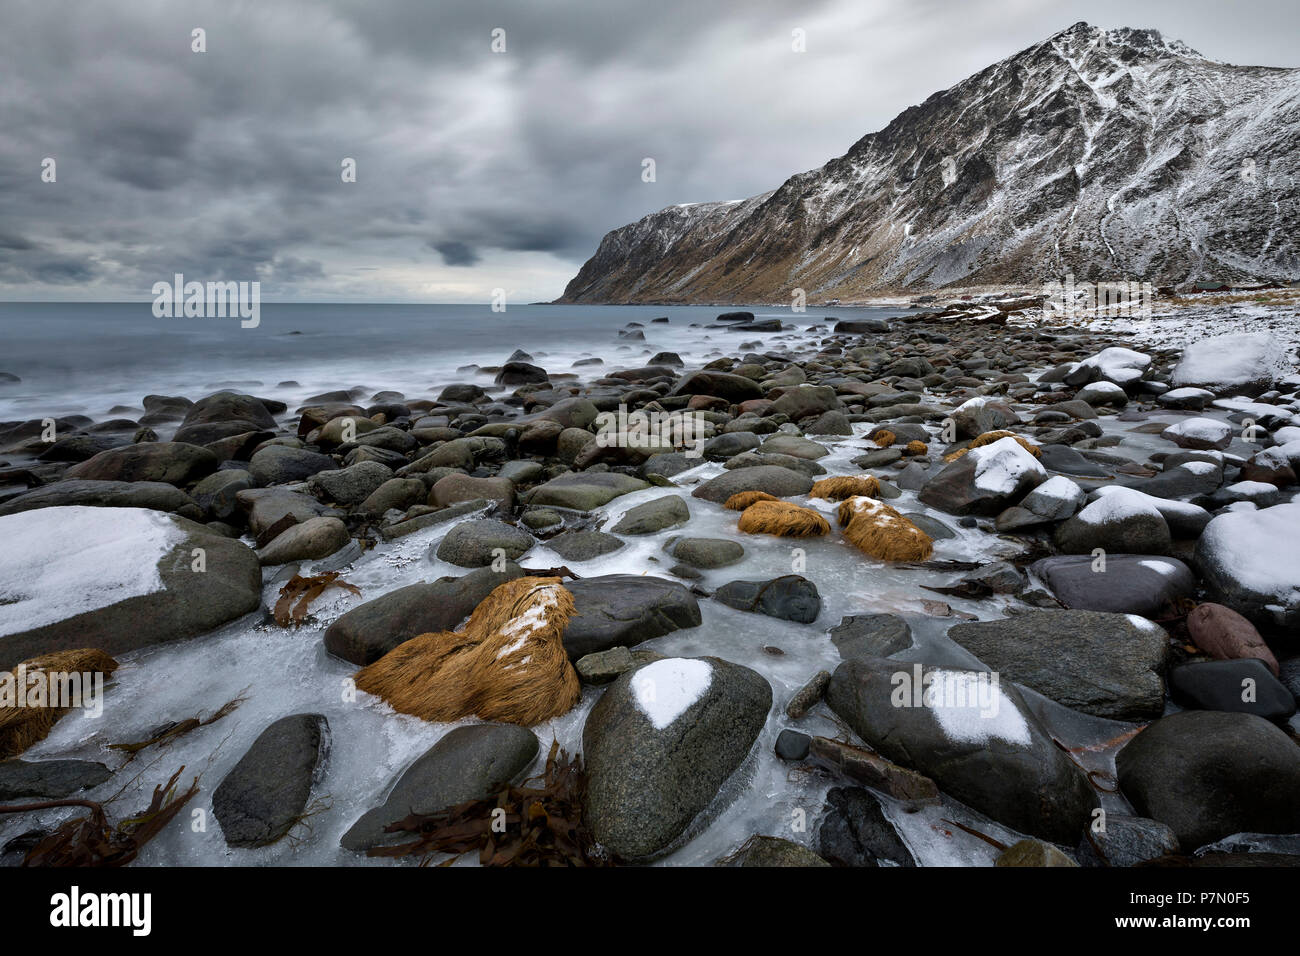 sea scape in Vareid whit Hustinden mountain, municipality of Flakstad, Lofoten Island, Norway, Europe Stock Photo